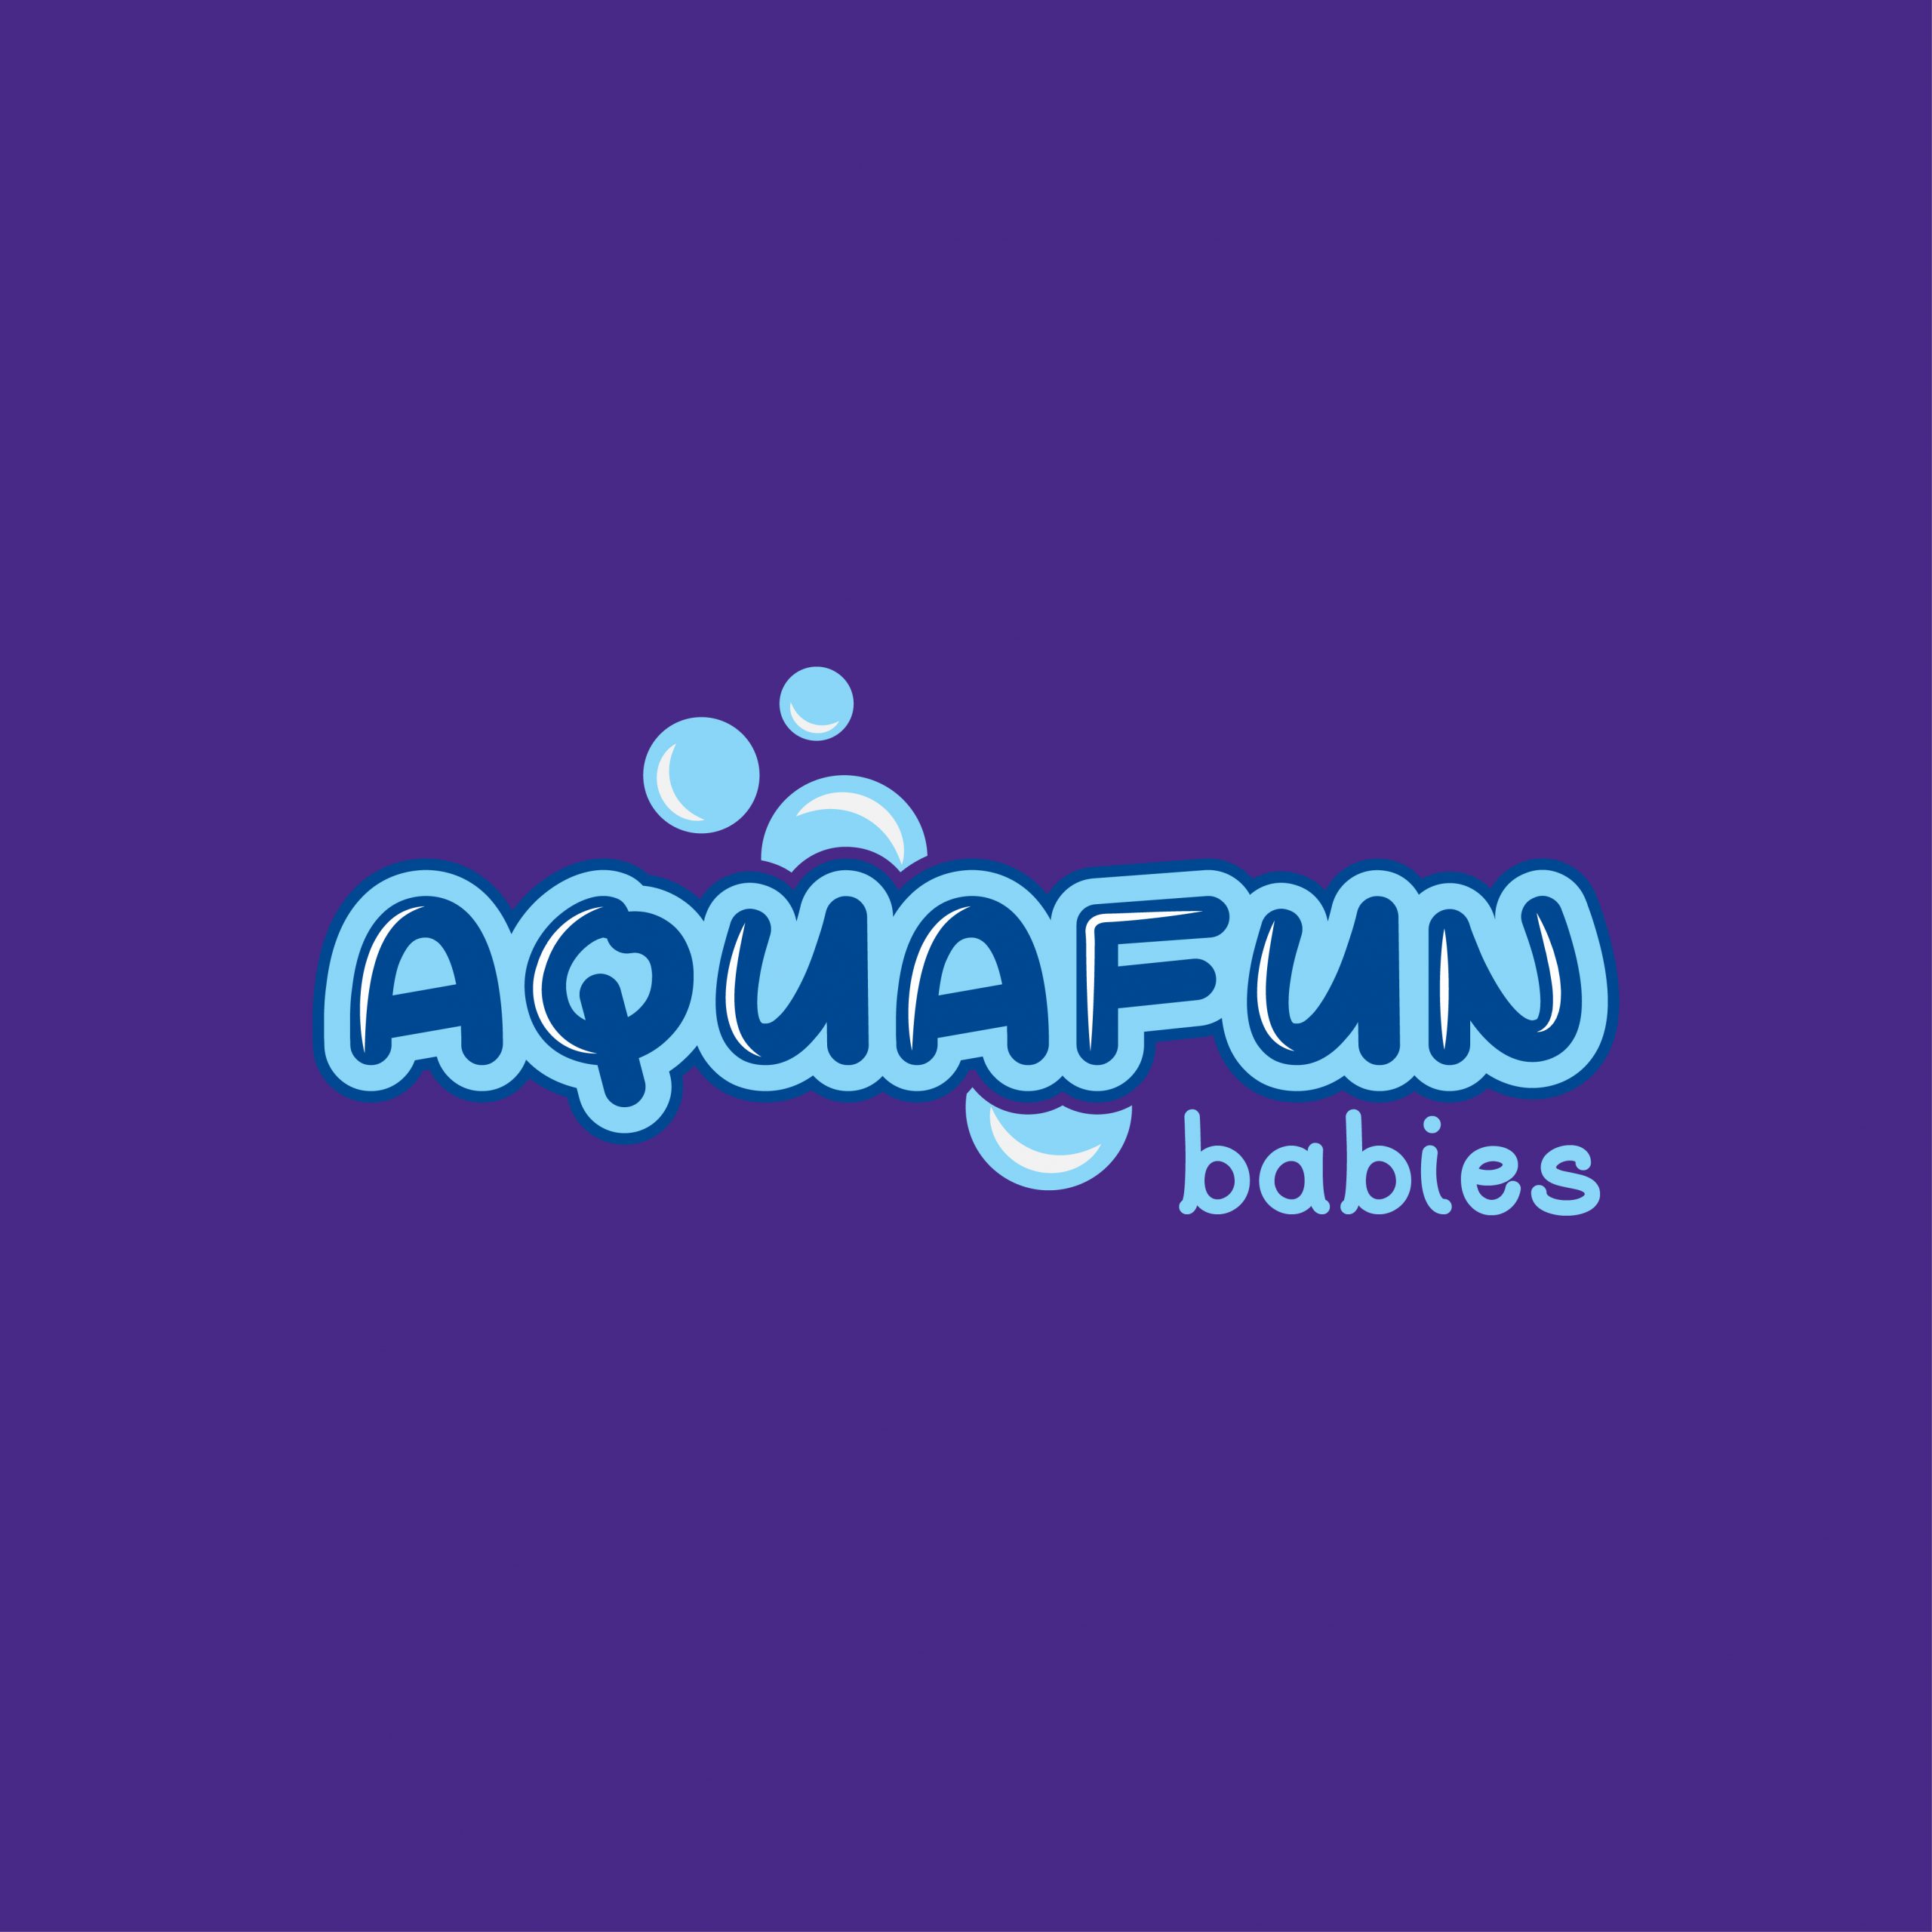 Aqua Logos